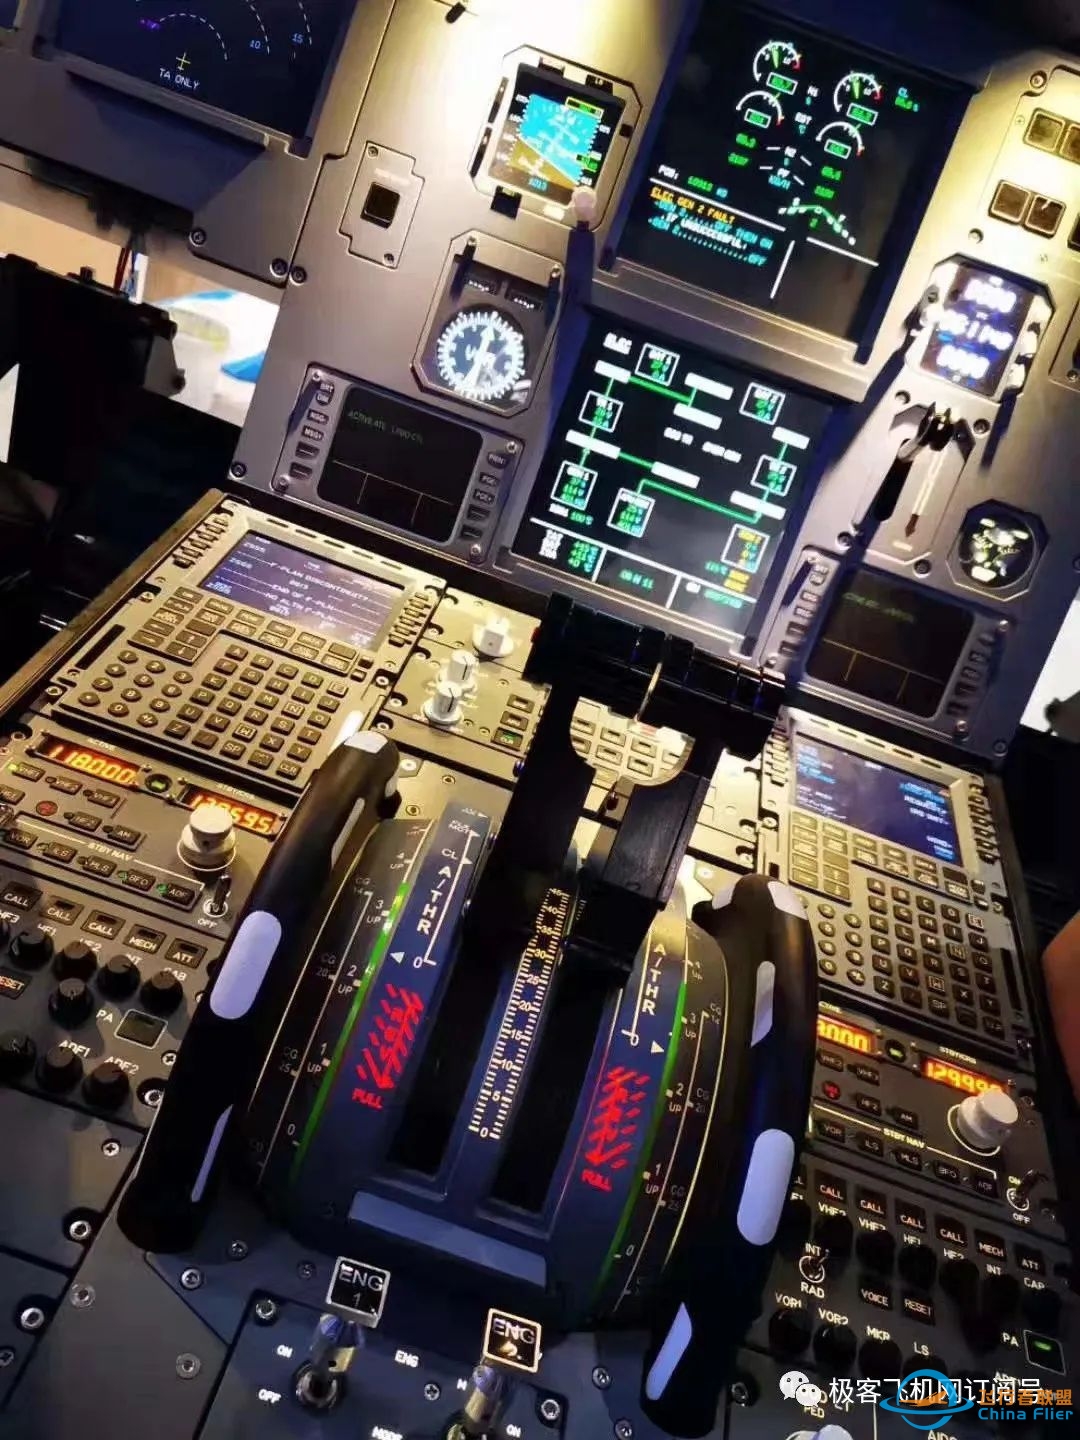 空客A320飞行模拟器出售,全新状态,1:1还原A320驾驶舱环境,适合科普教学!-8622 